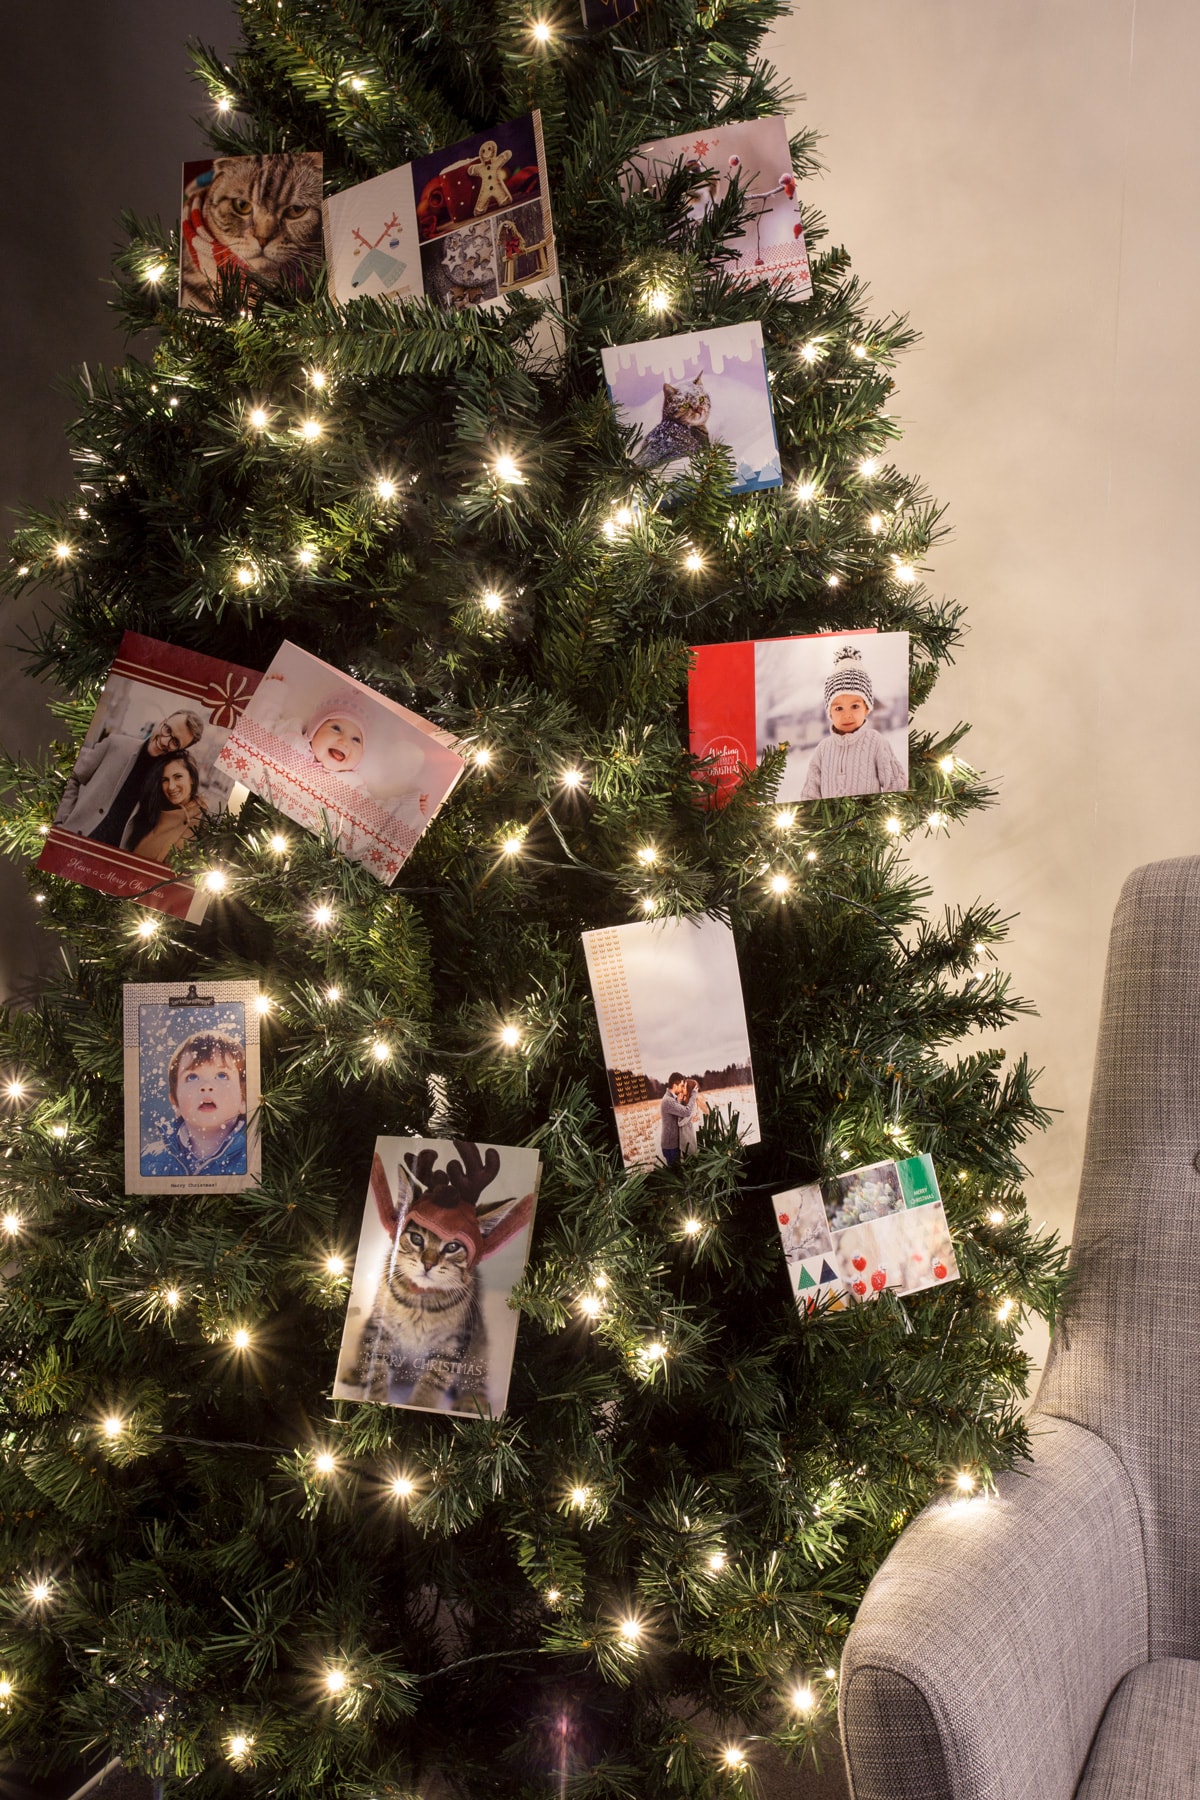 Das brauchst du: einen Weihnachtsbaum, rotes Geschenkband, Locher